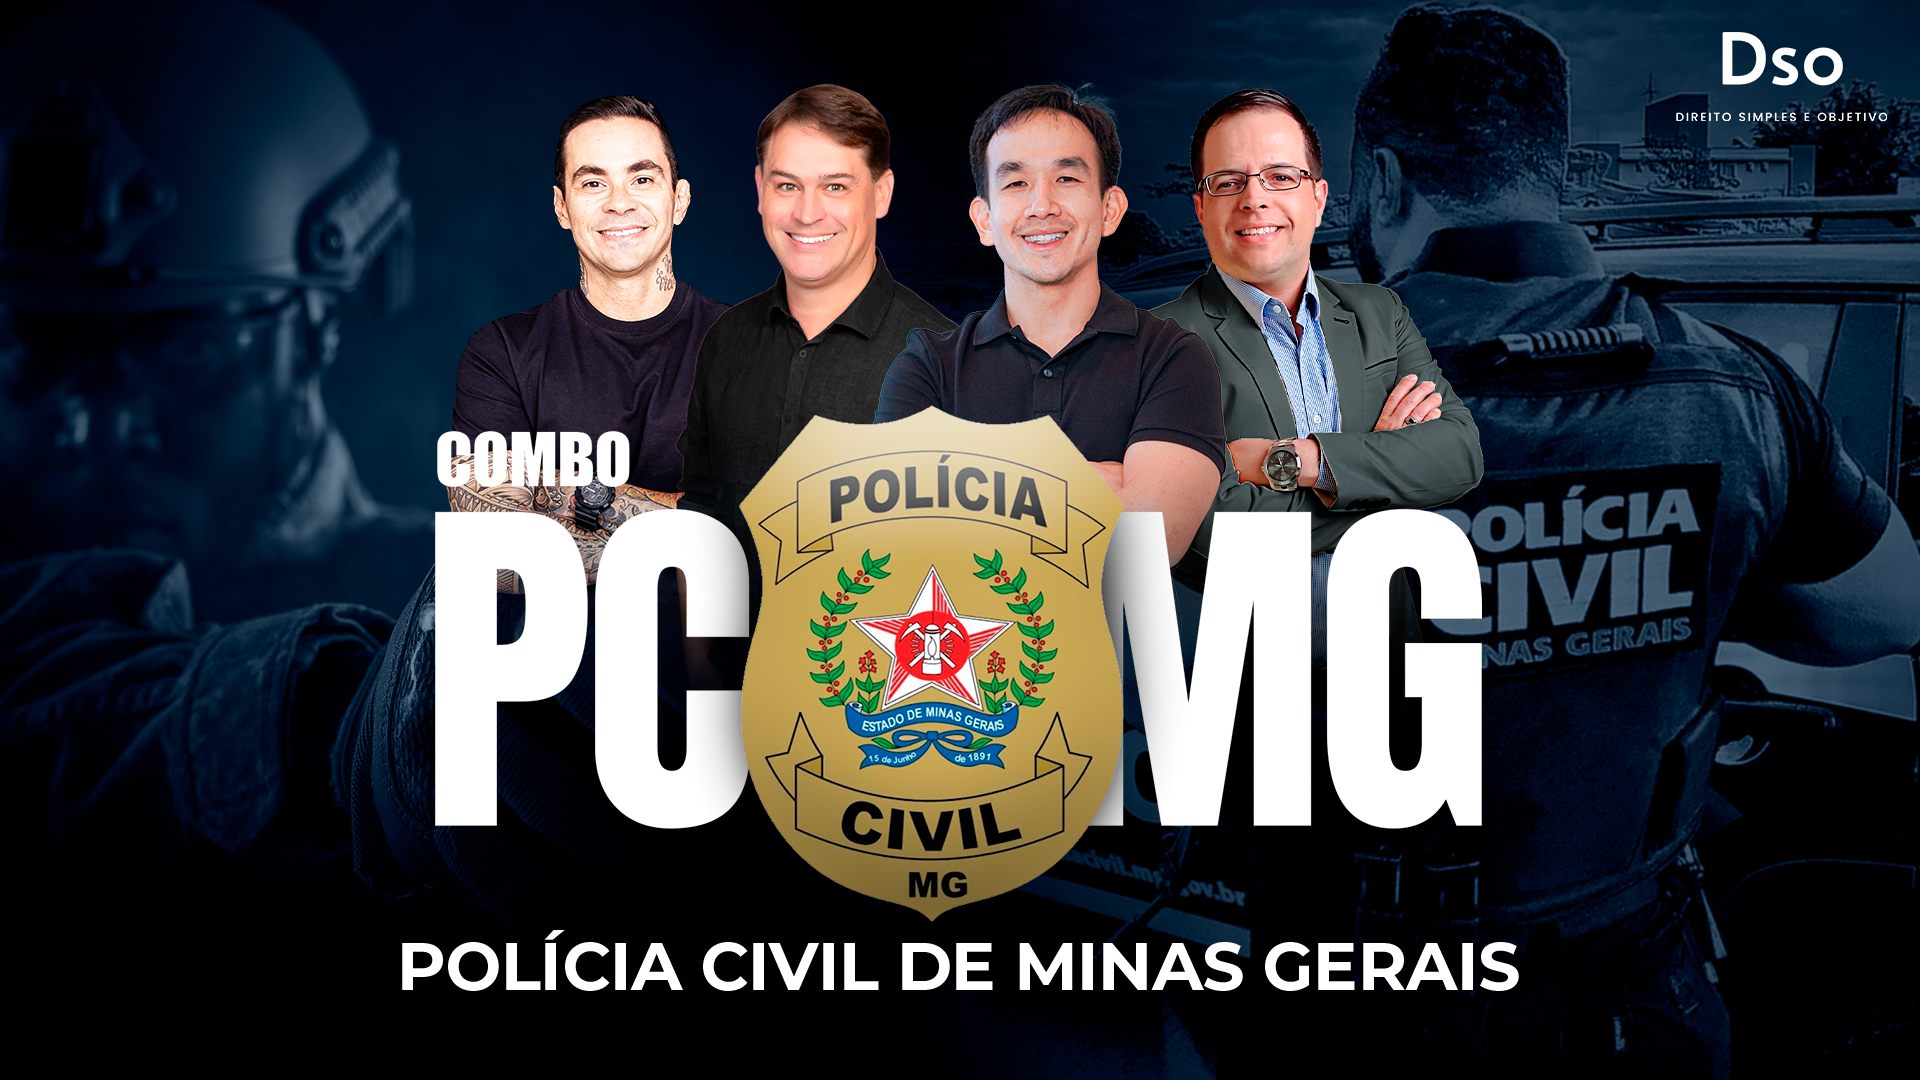 CONCURSO PCMG INVESTIGADOR / ESCRIVÃO